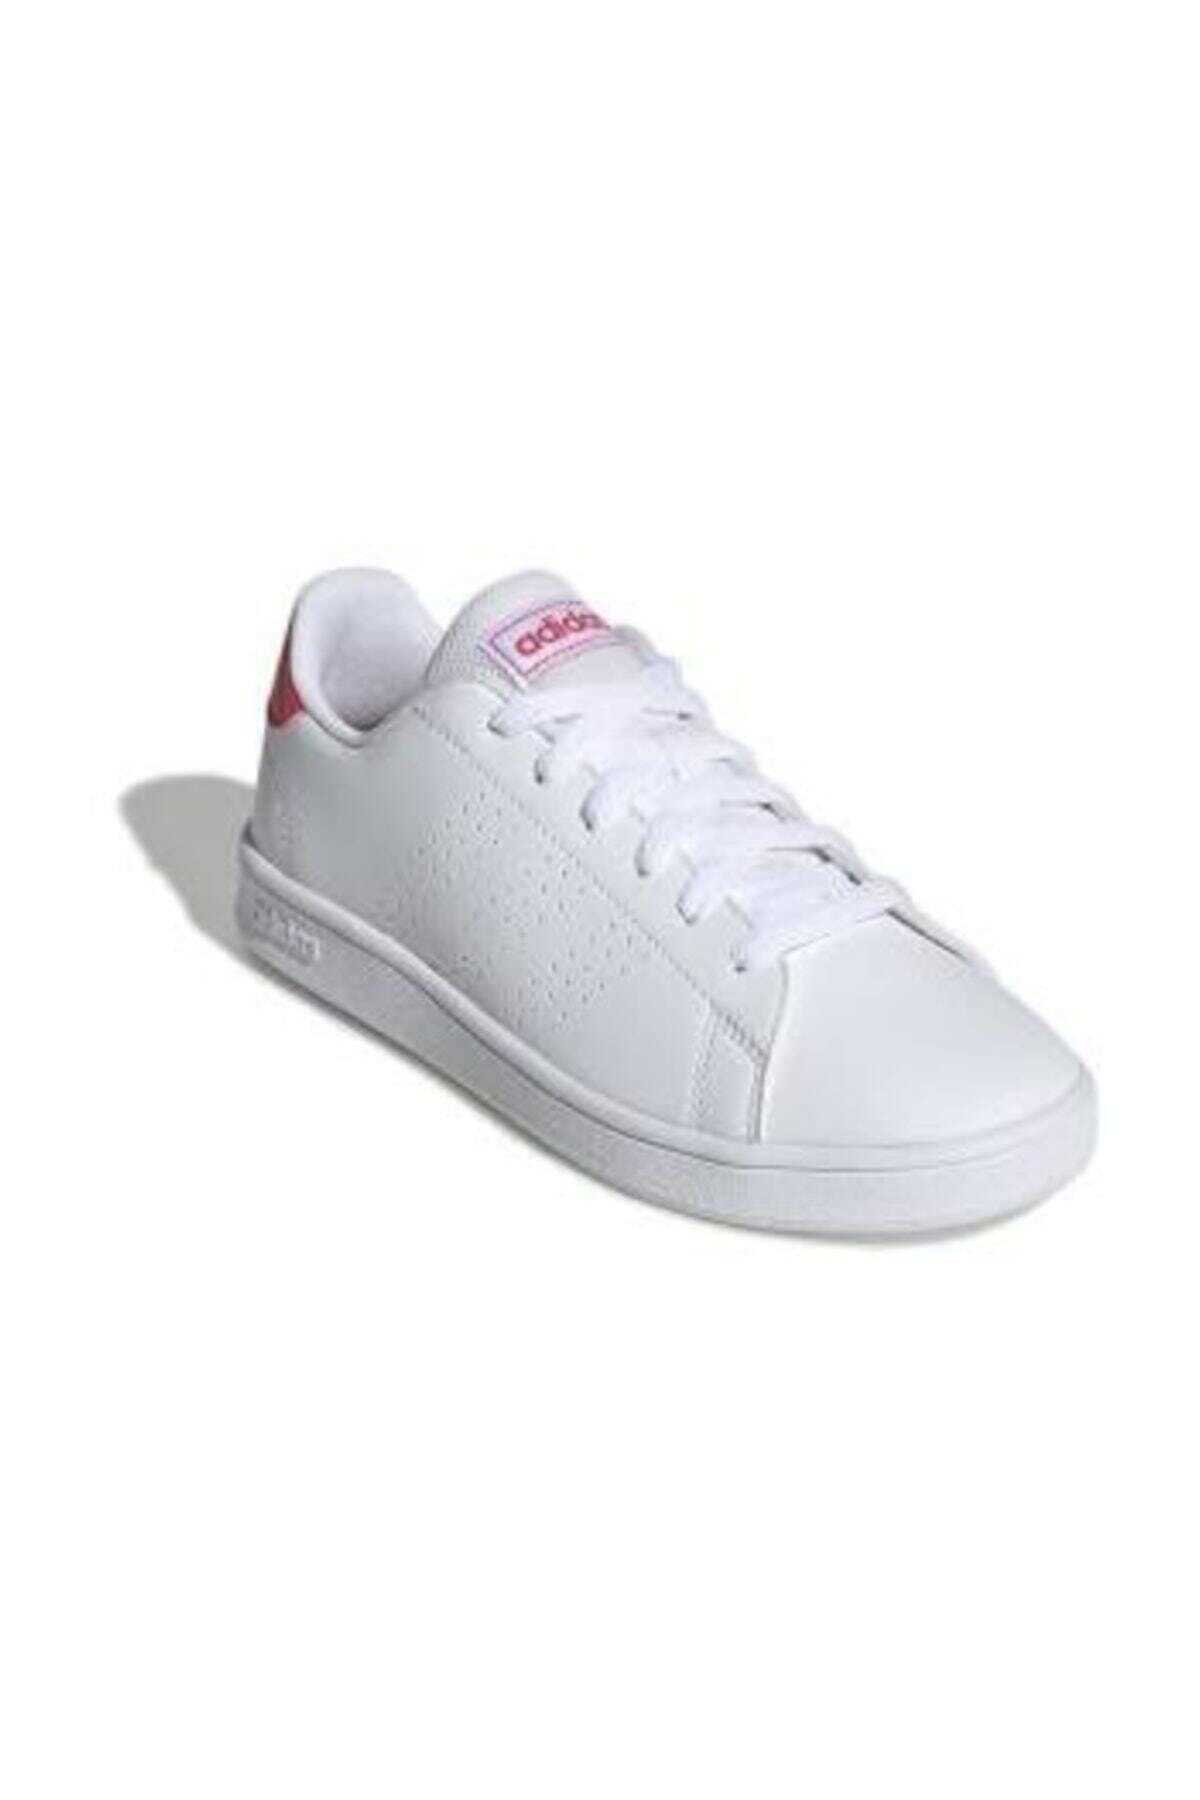 کفش ورزشی یونیسکس سری Advantage (Gs) سفید برند adidas 